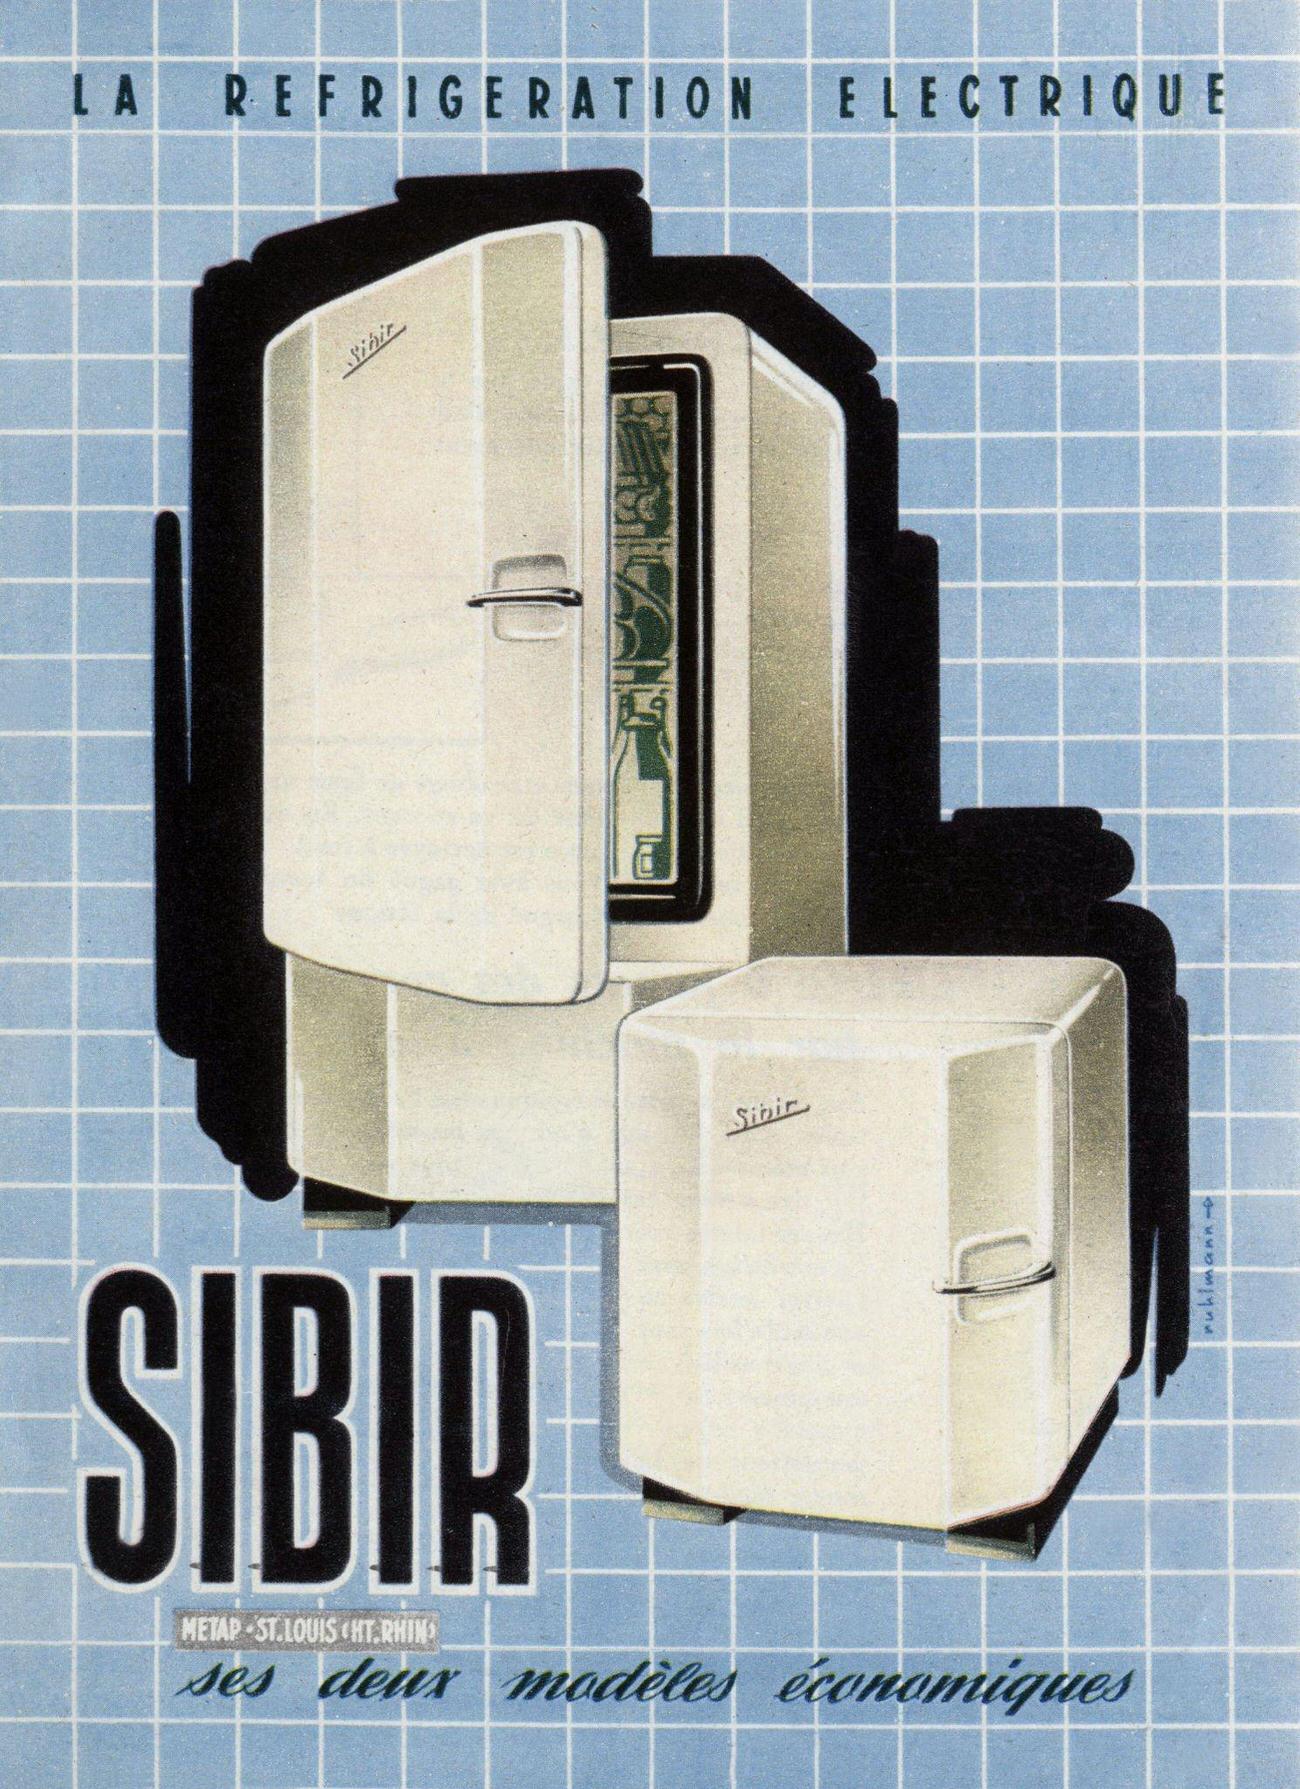 Electric refrigerators Sibir ad, March 1952.